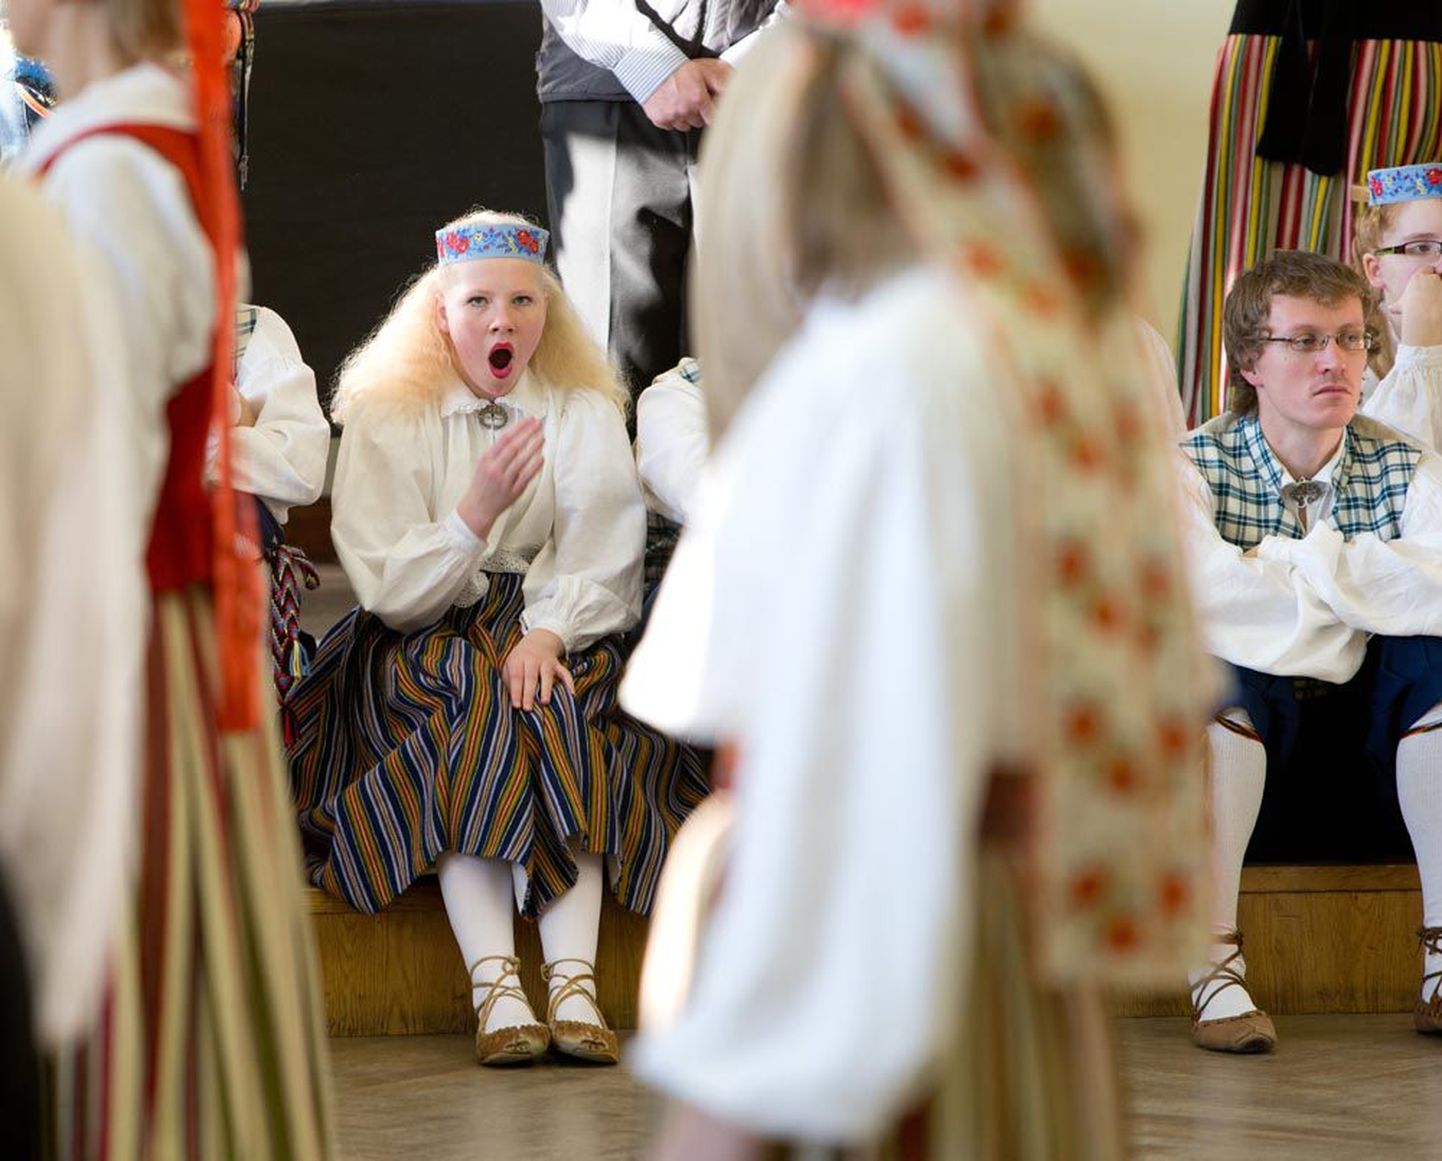 Laupäeval tegid tantsijad suviseks peoks proove Tallinnas Salme kultuurikeskuses. Päev venis pikale, tööd oli palju, lõpuks tükkis uni peale.